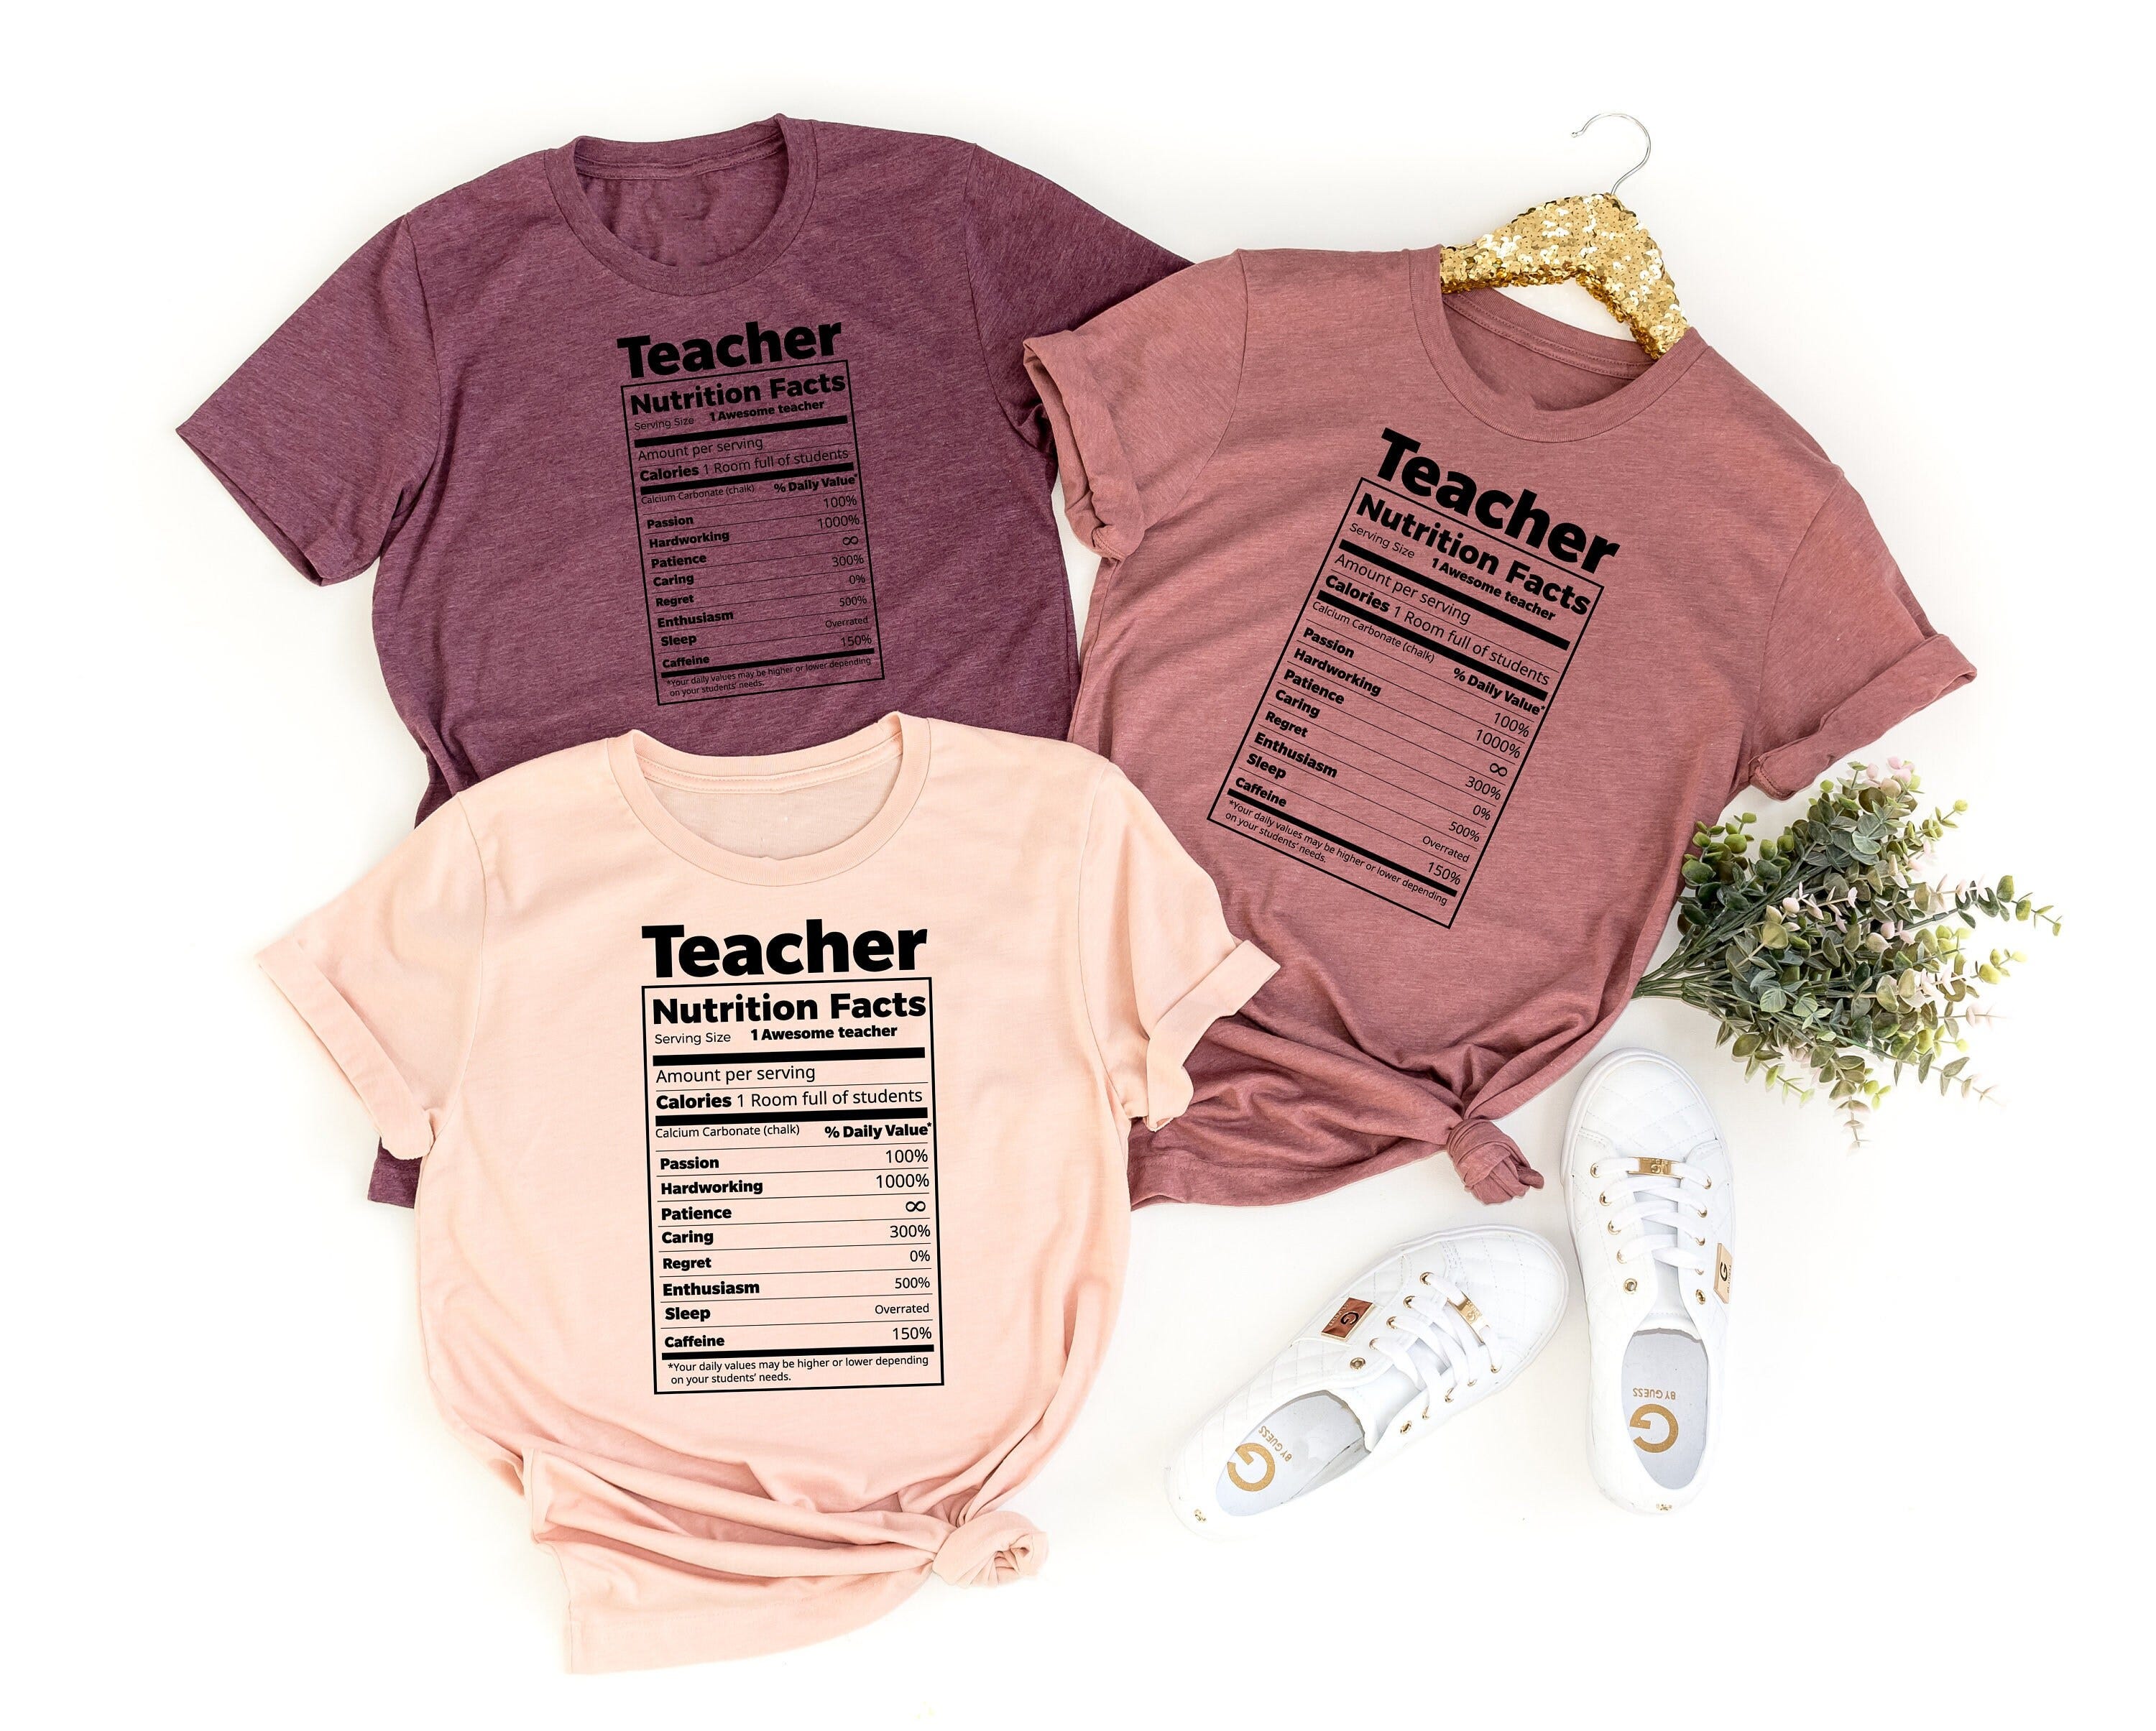 Teacher Nutrition Facts Shirt, Caring-Hardworking-Passion-Caffeine Teacher Shirt, Teacher Appreciation Day Shirt, Teacher Gift